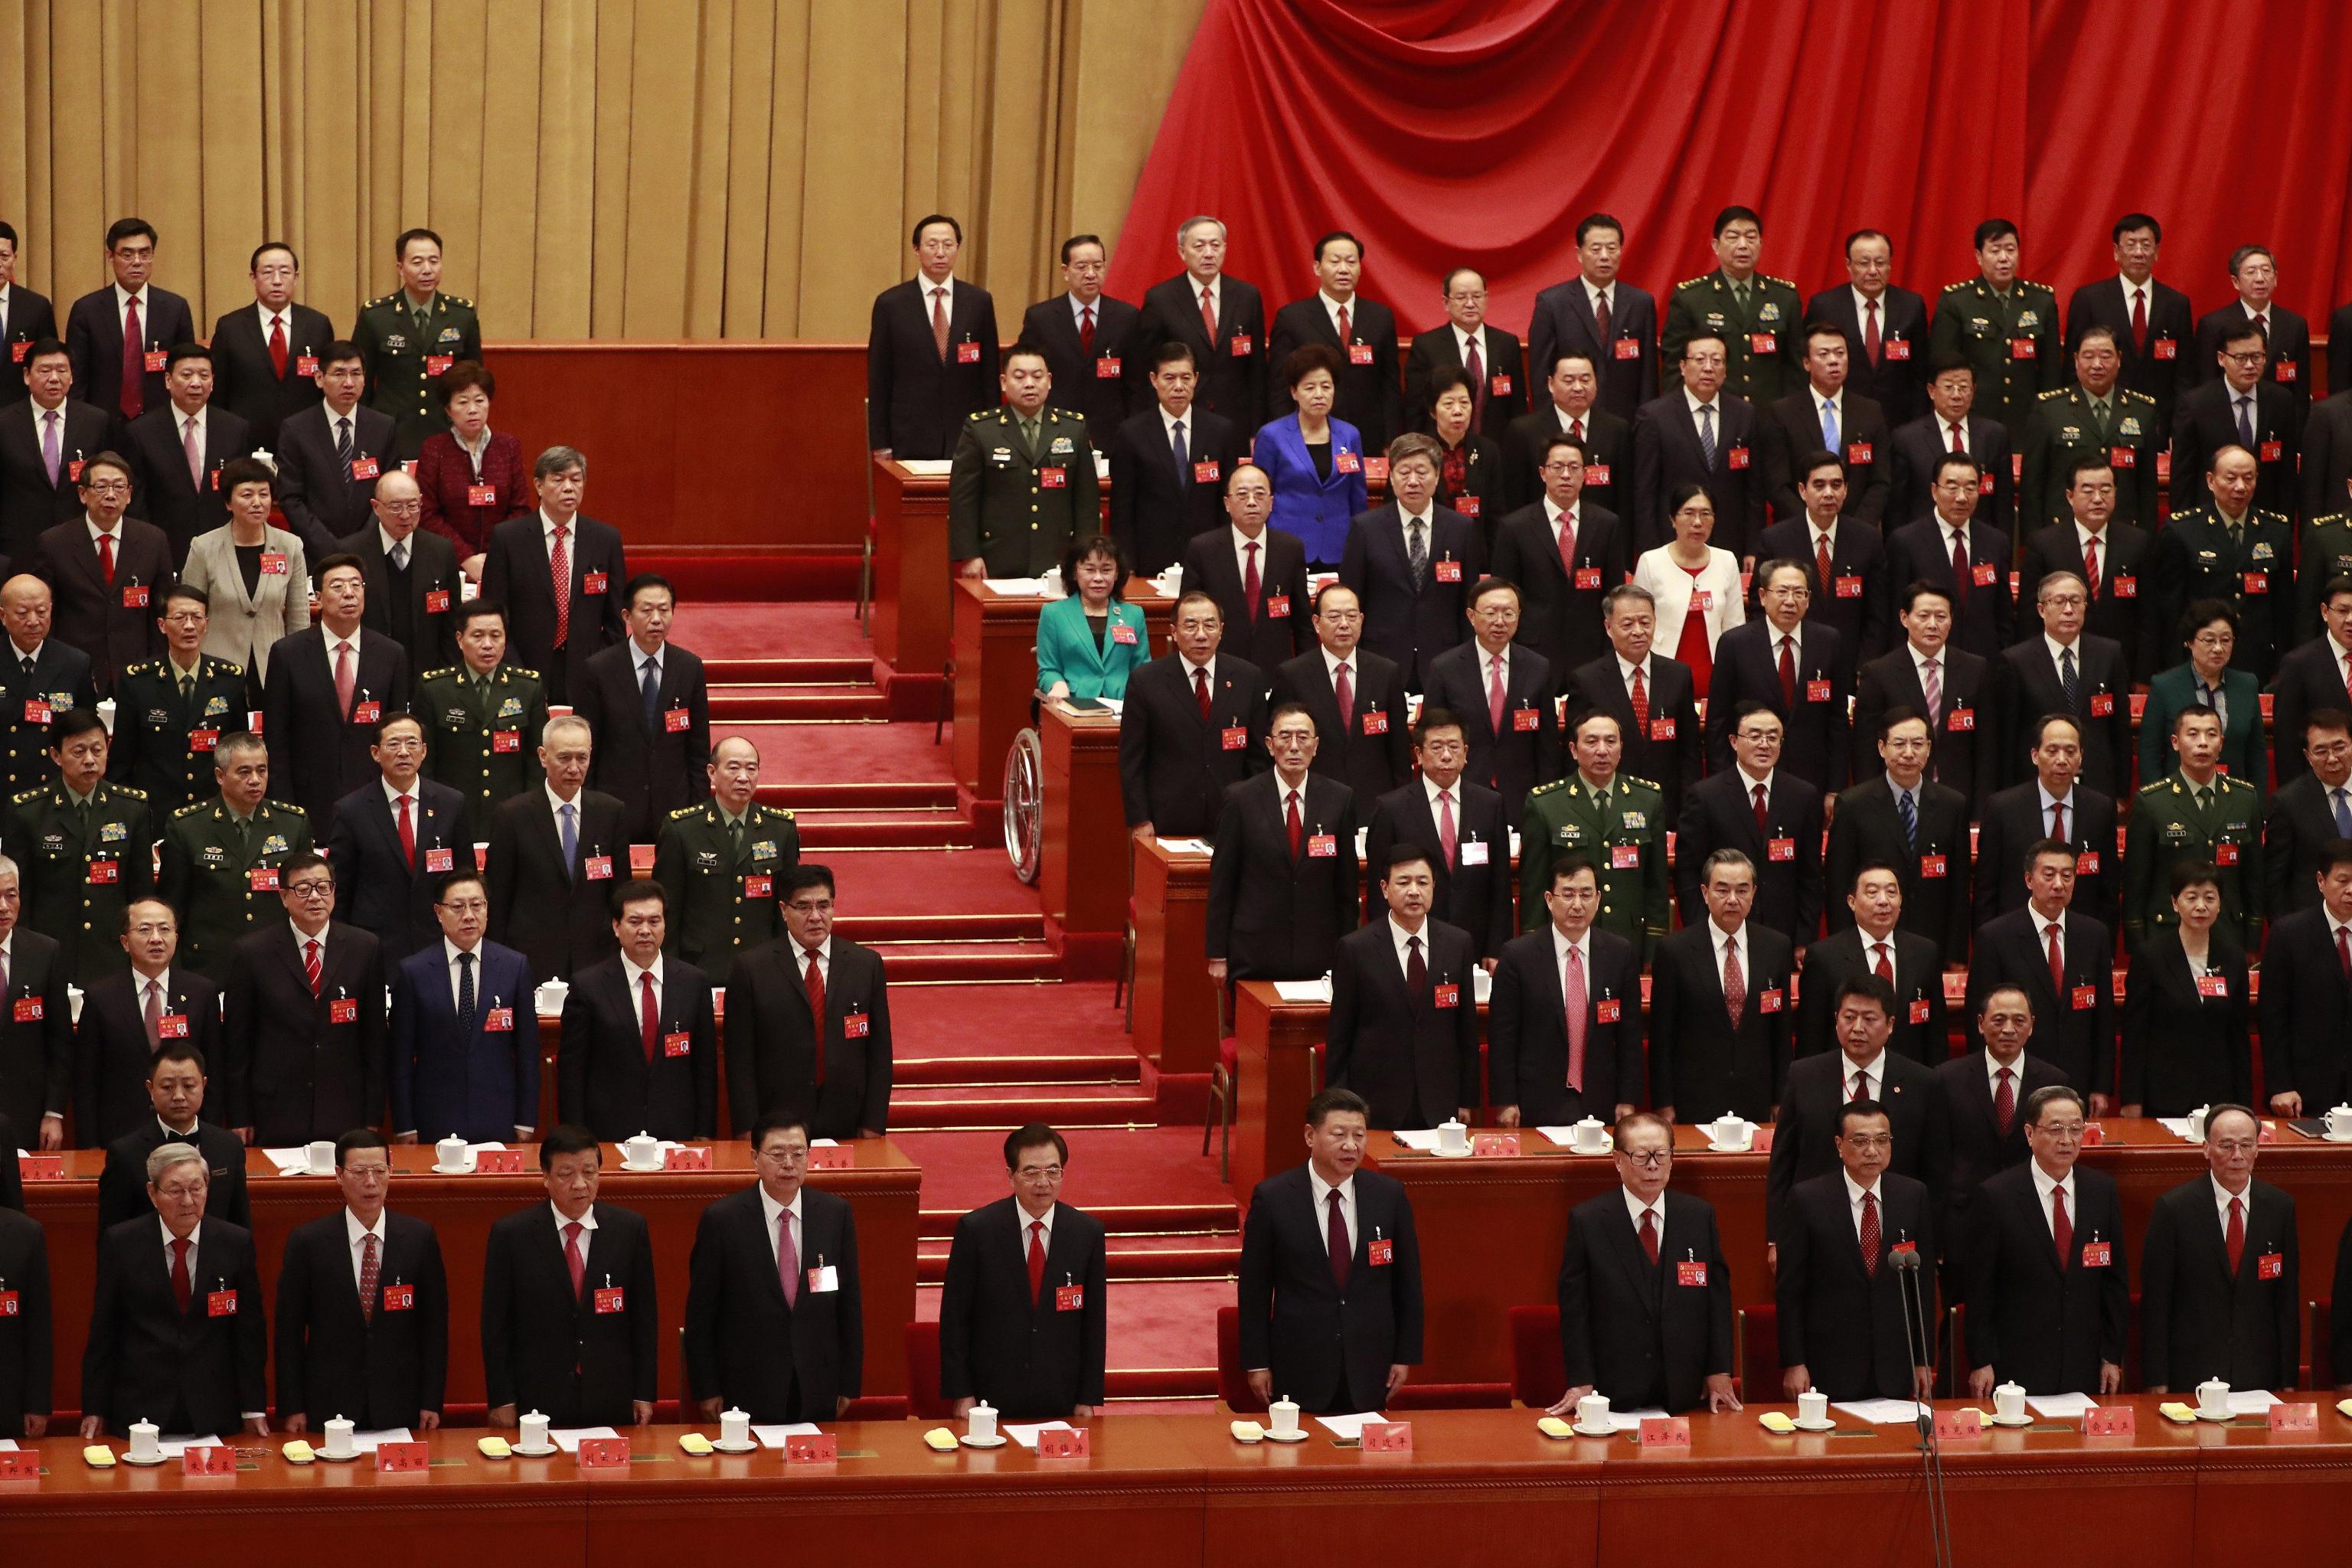 Il Presidente Xi Jinping, il premier Li Keqiang ed alle loro spalle i delegati, in piedi durante la cerimonia di apertura